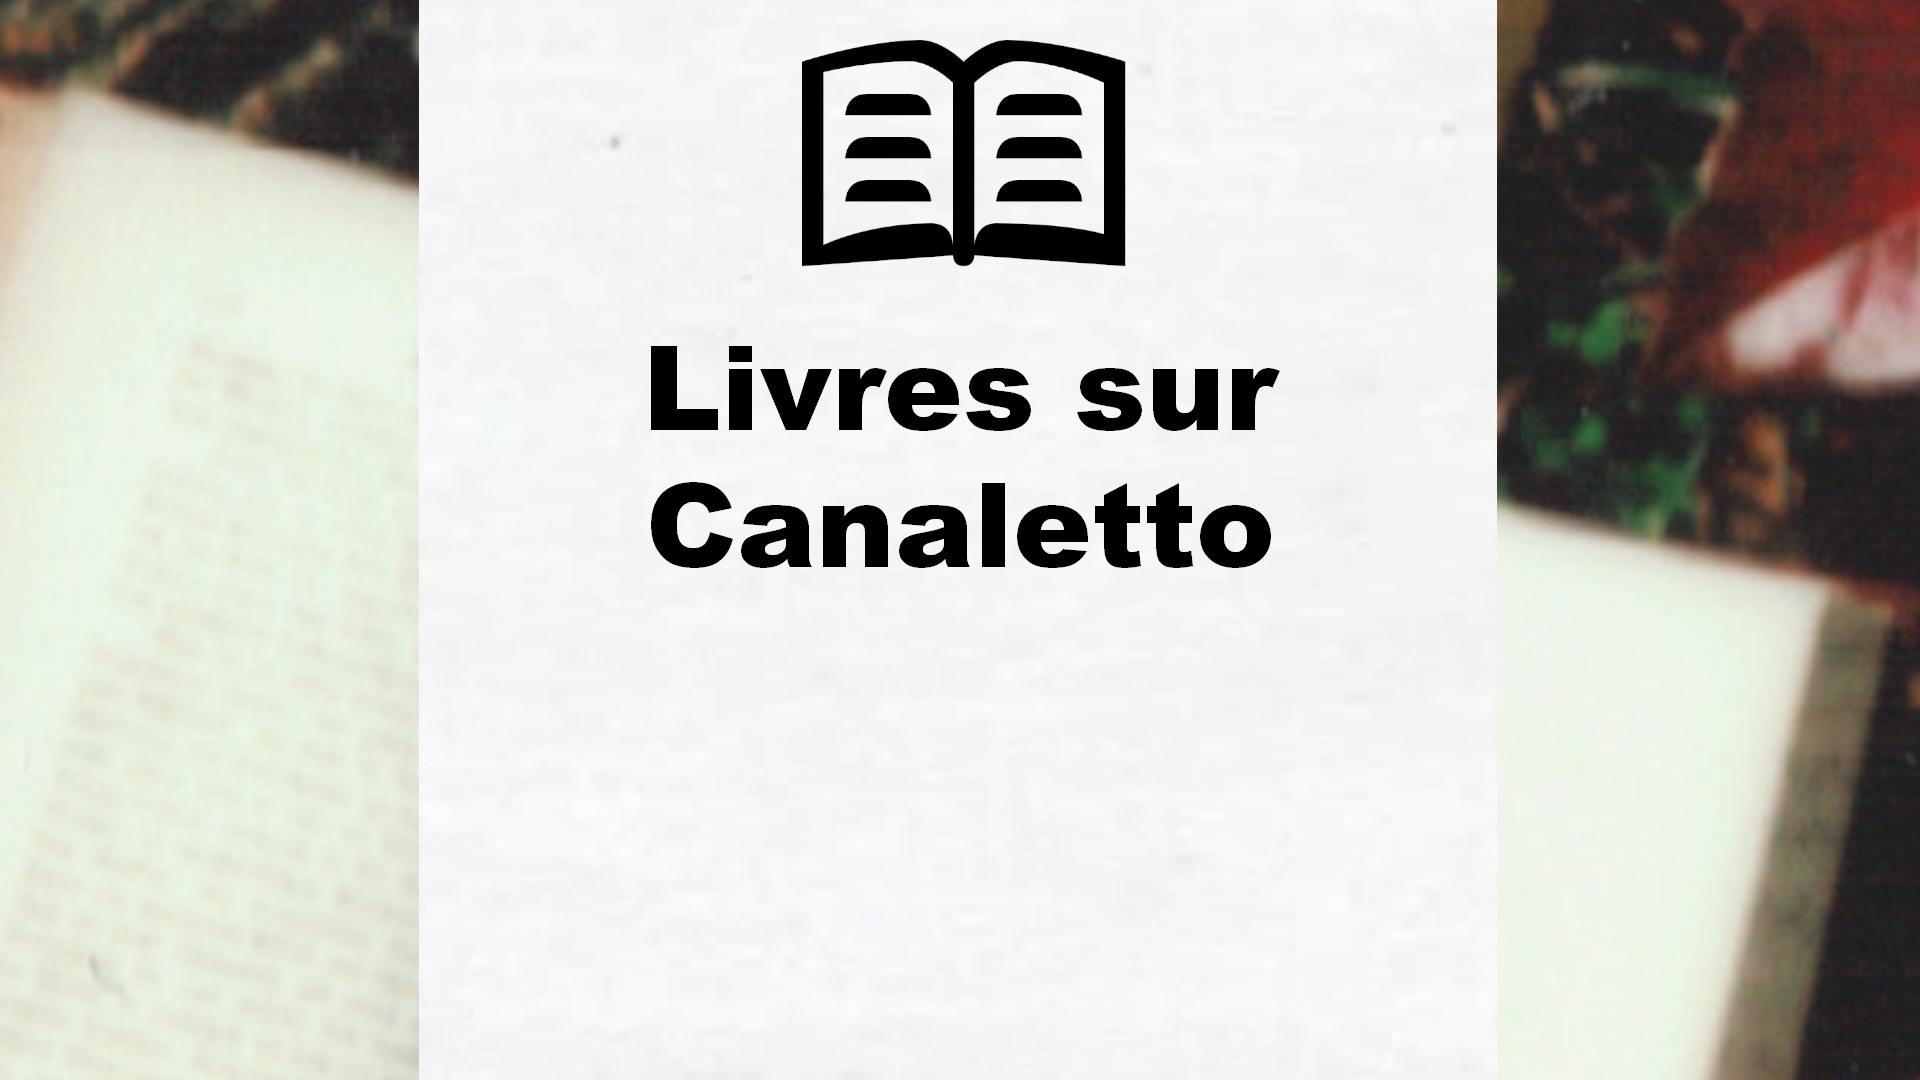 Livres sur Canaletto